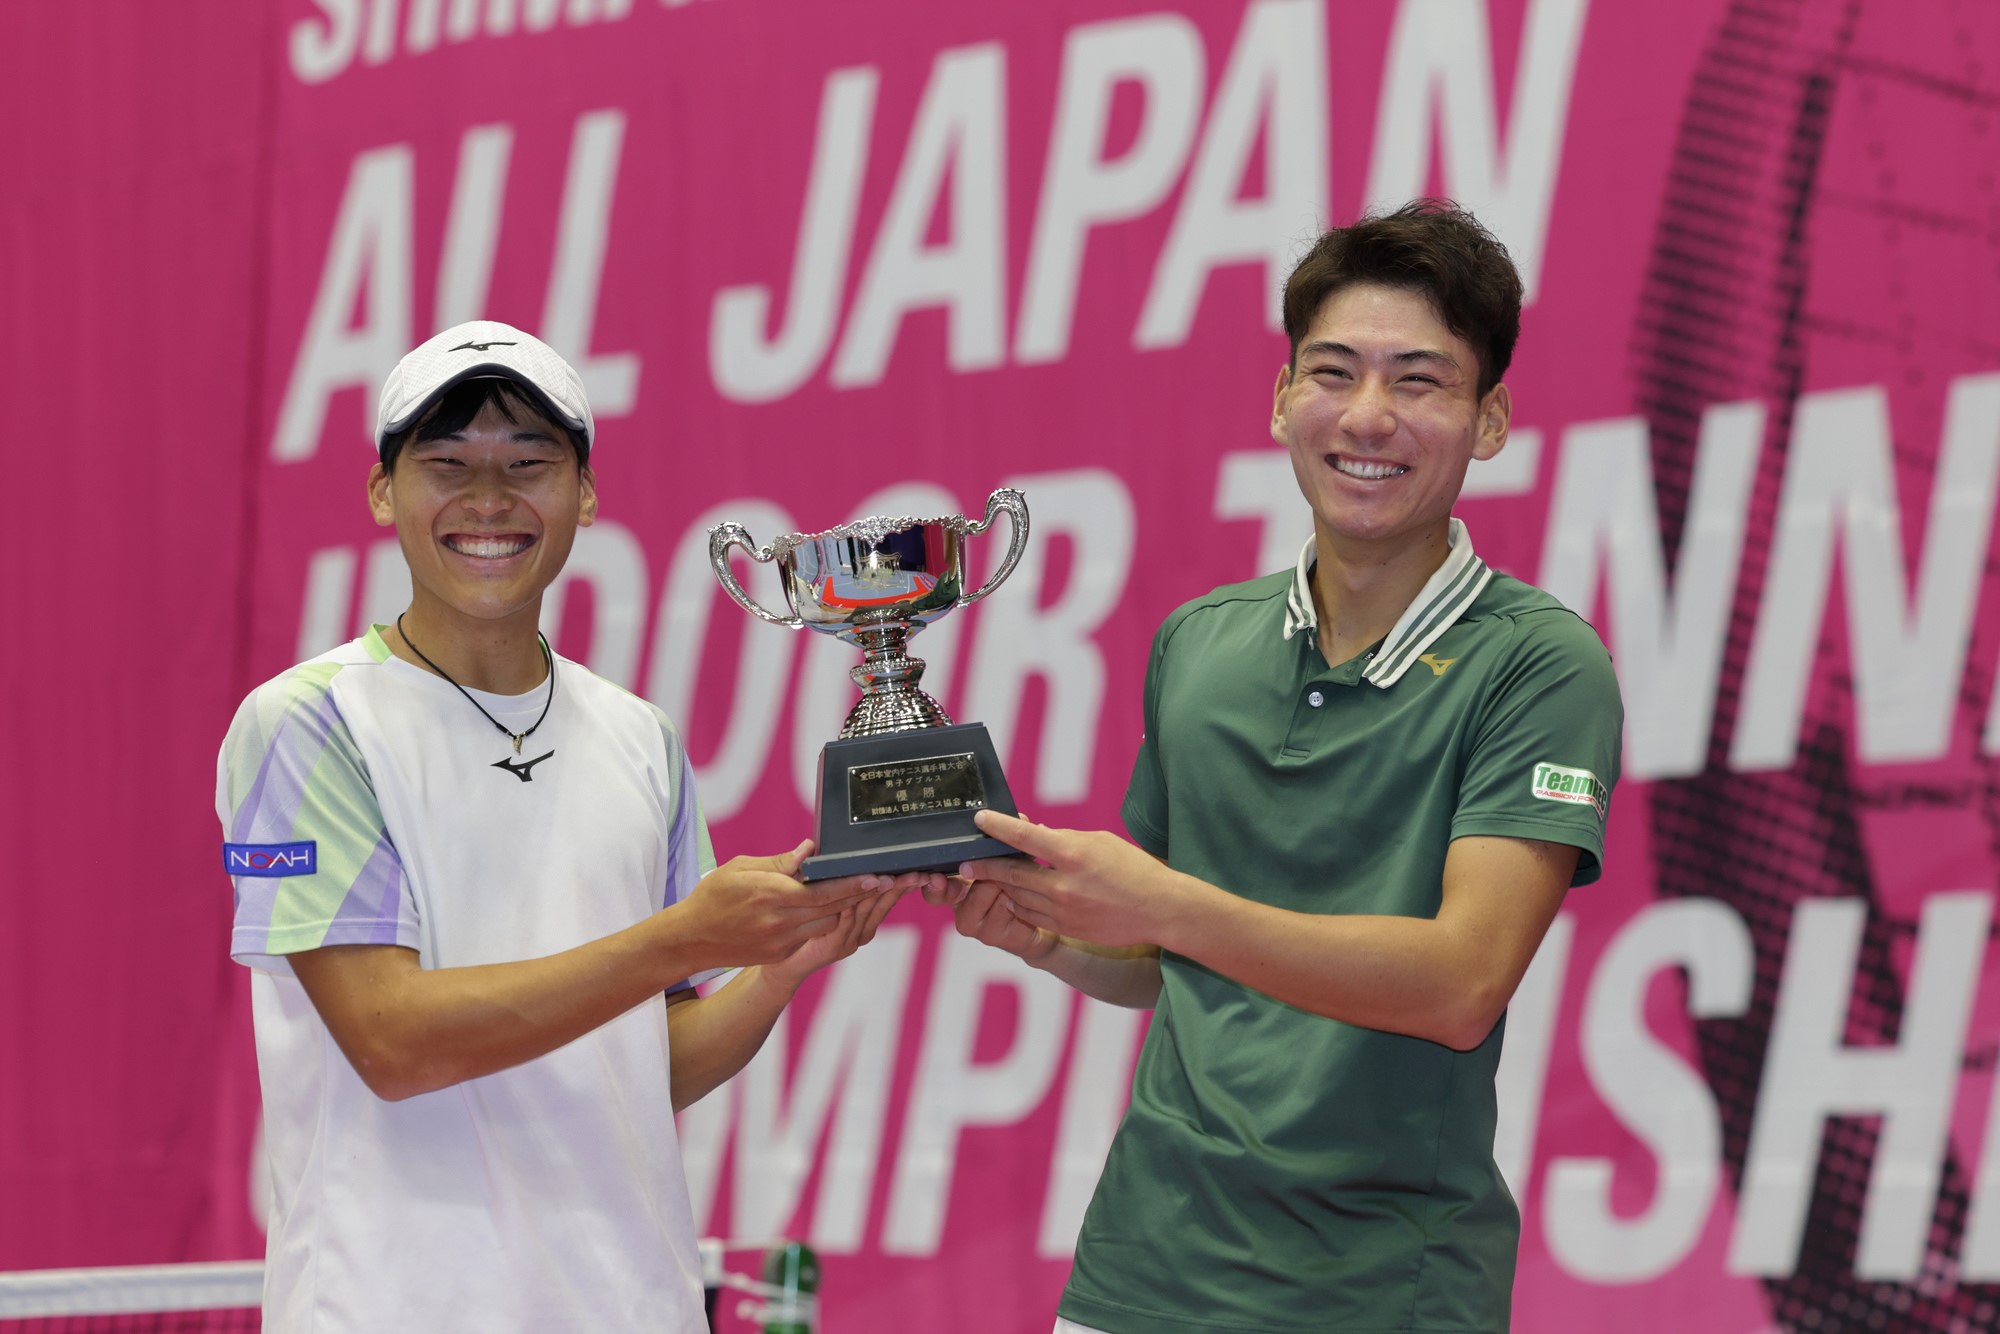 第56回島津全日本室内テニス選手権大会